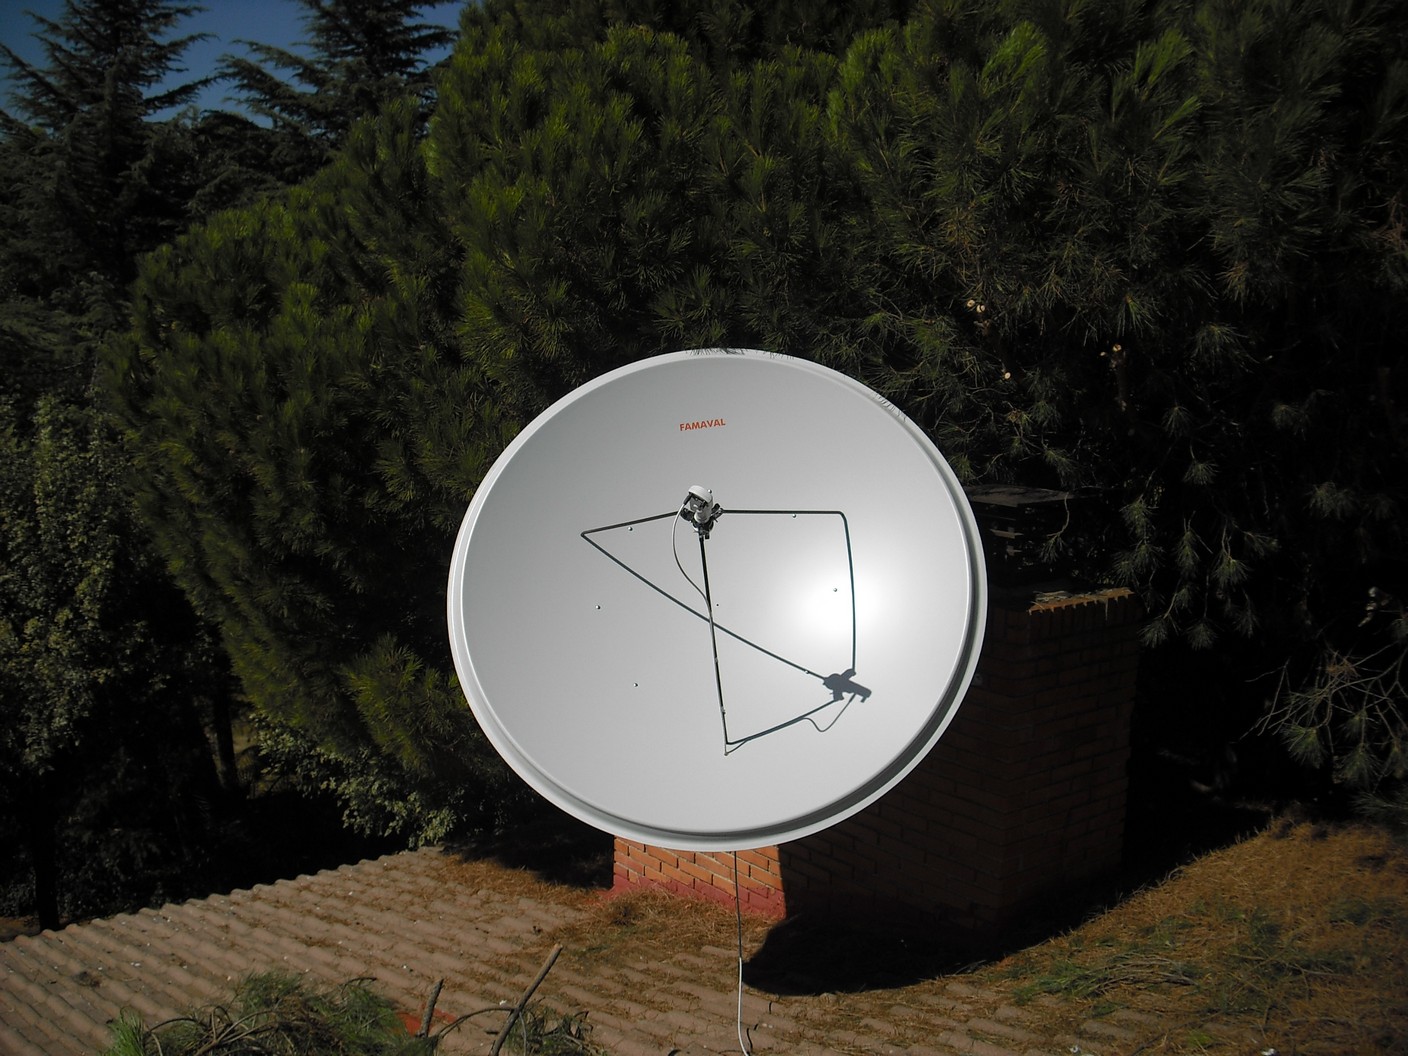 big dish 1.9 2.4 satellite dishes famaval portuguese costa blanca